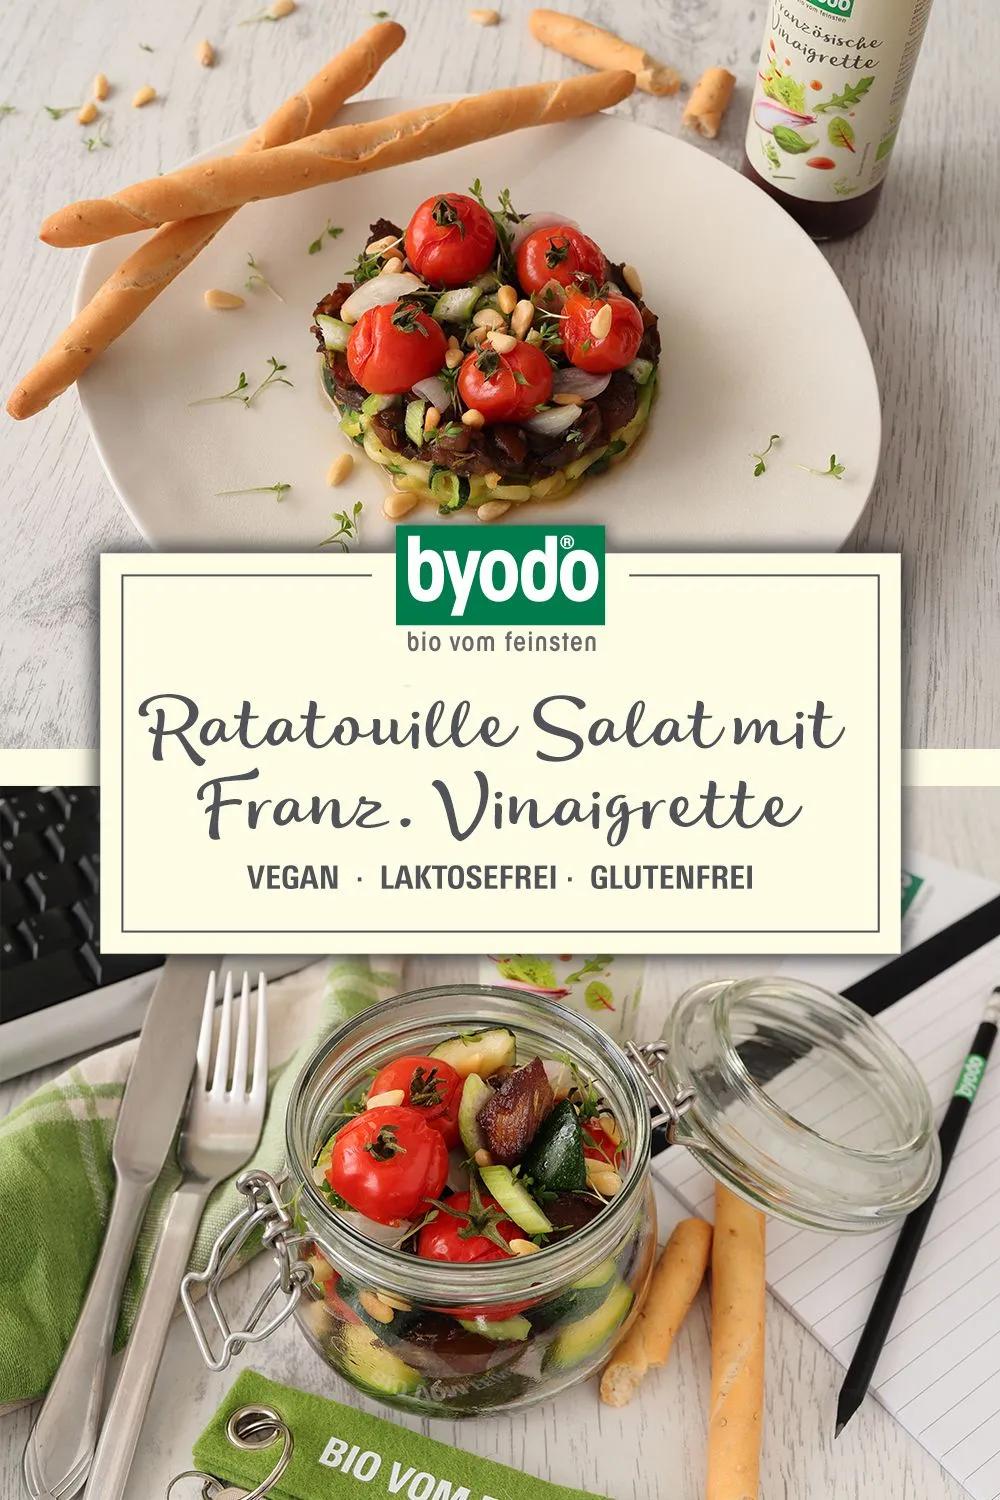 Ratatouille Salat mit Französischer Vinaigrette | Ratatouille, Salat ...